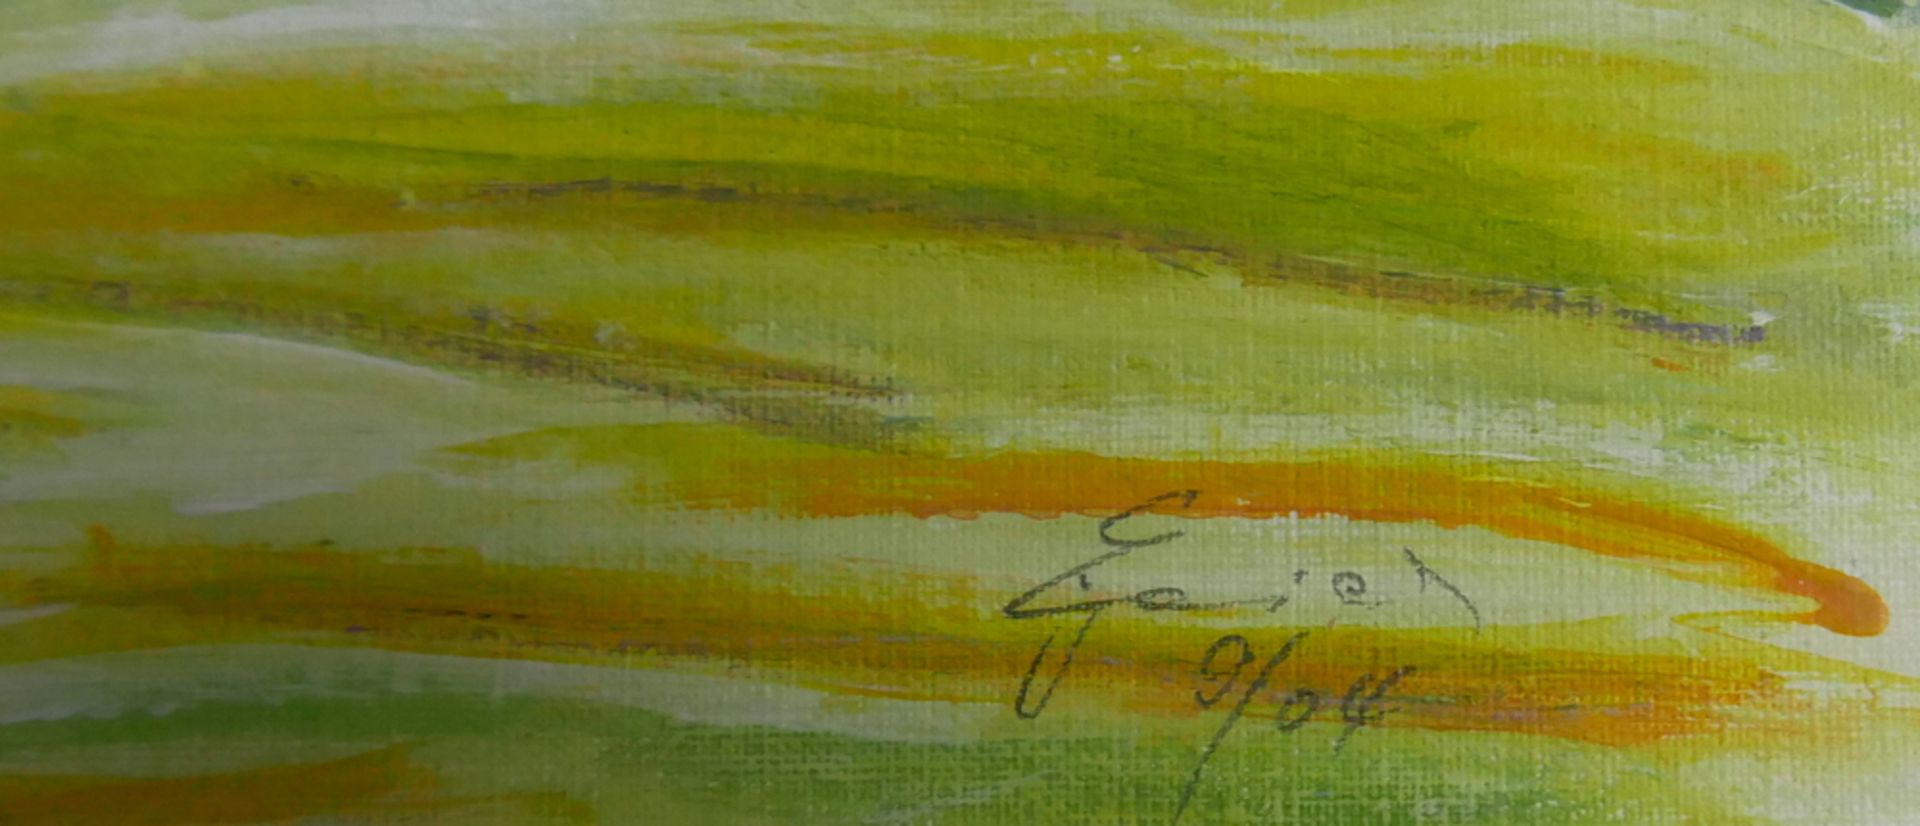 Aquarell "Landschaftsmalerei" hinter Glas gerahmt, rechts unten unleserliche Signatur. Gesamtmaße: - Bild 2 aus 2